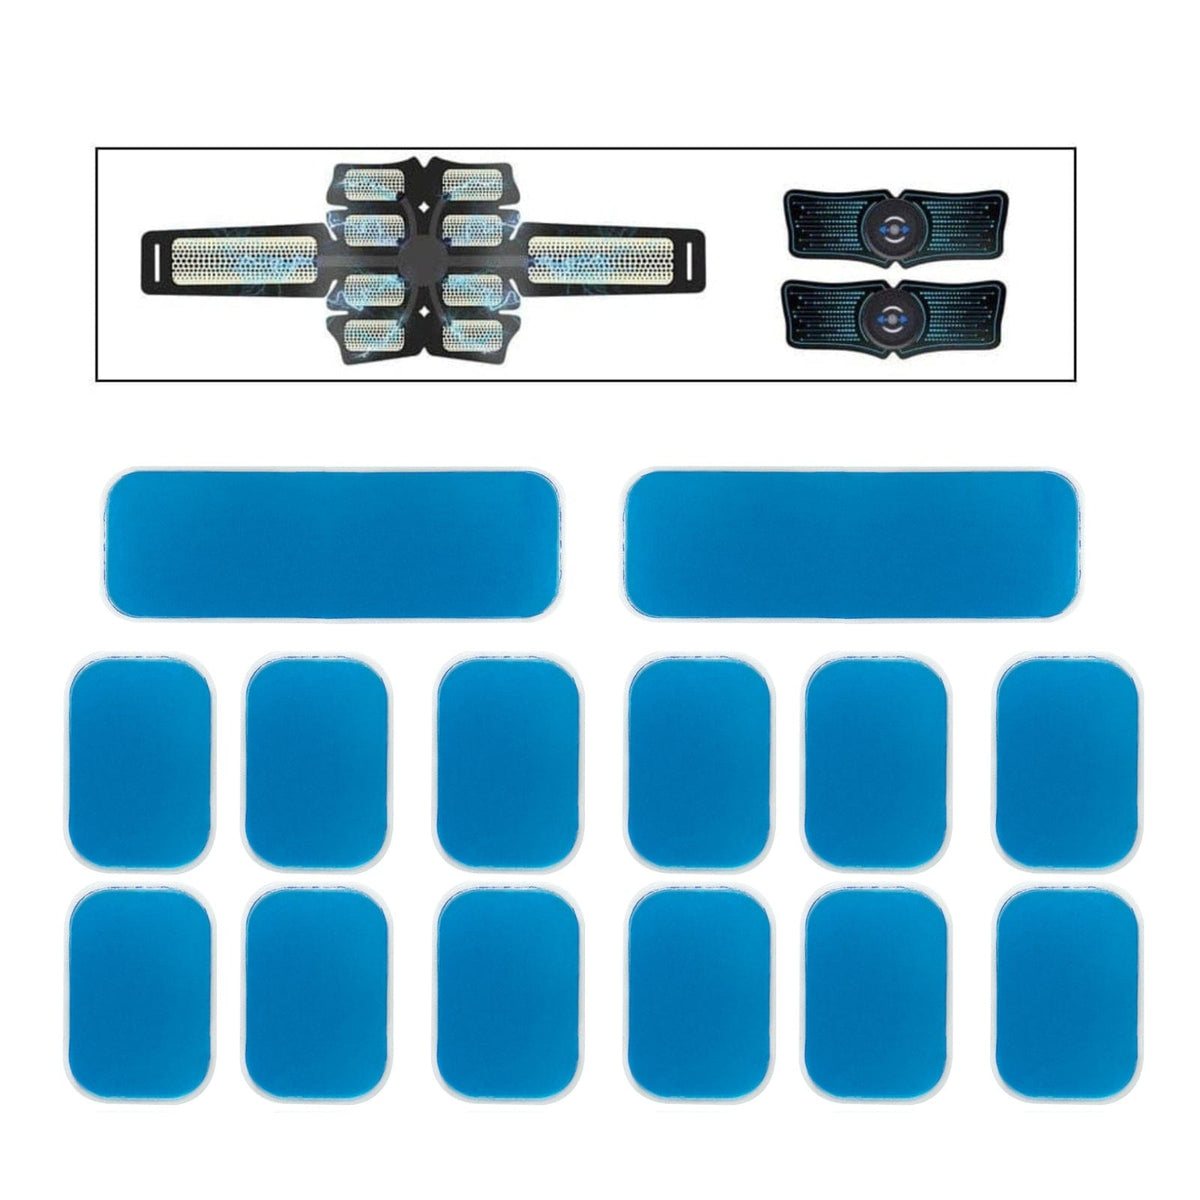 GEL PADS For BMR Flex Belt Abdominal Toning System (One Set) New & Sealed!